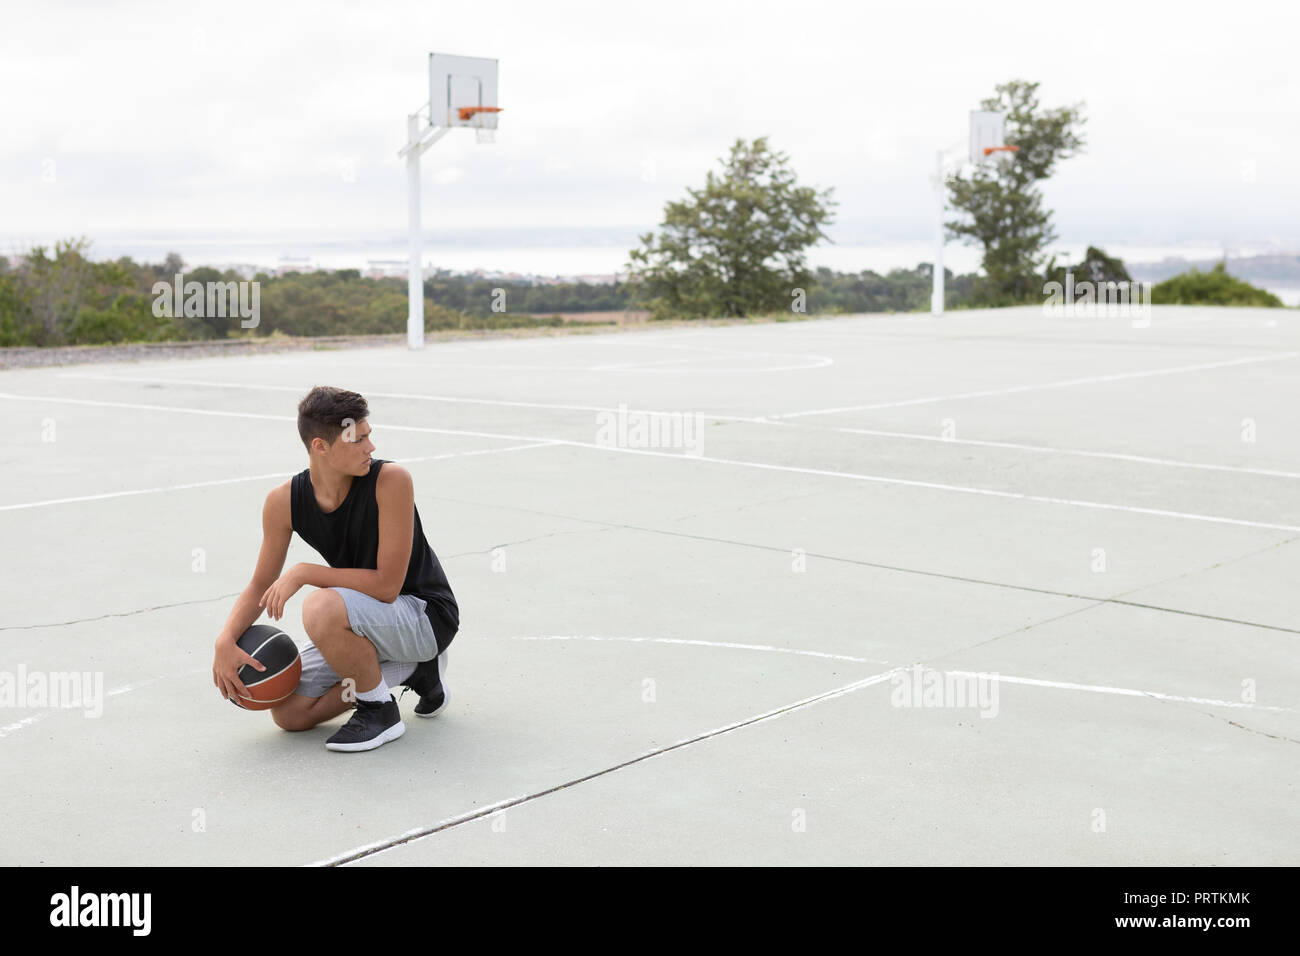 Les adolescents de sexe masculin de basket-ball ballon de basket-ball avec accroupie sur cour Banque D'Images